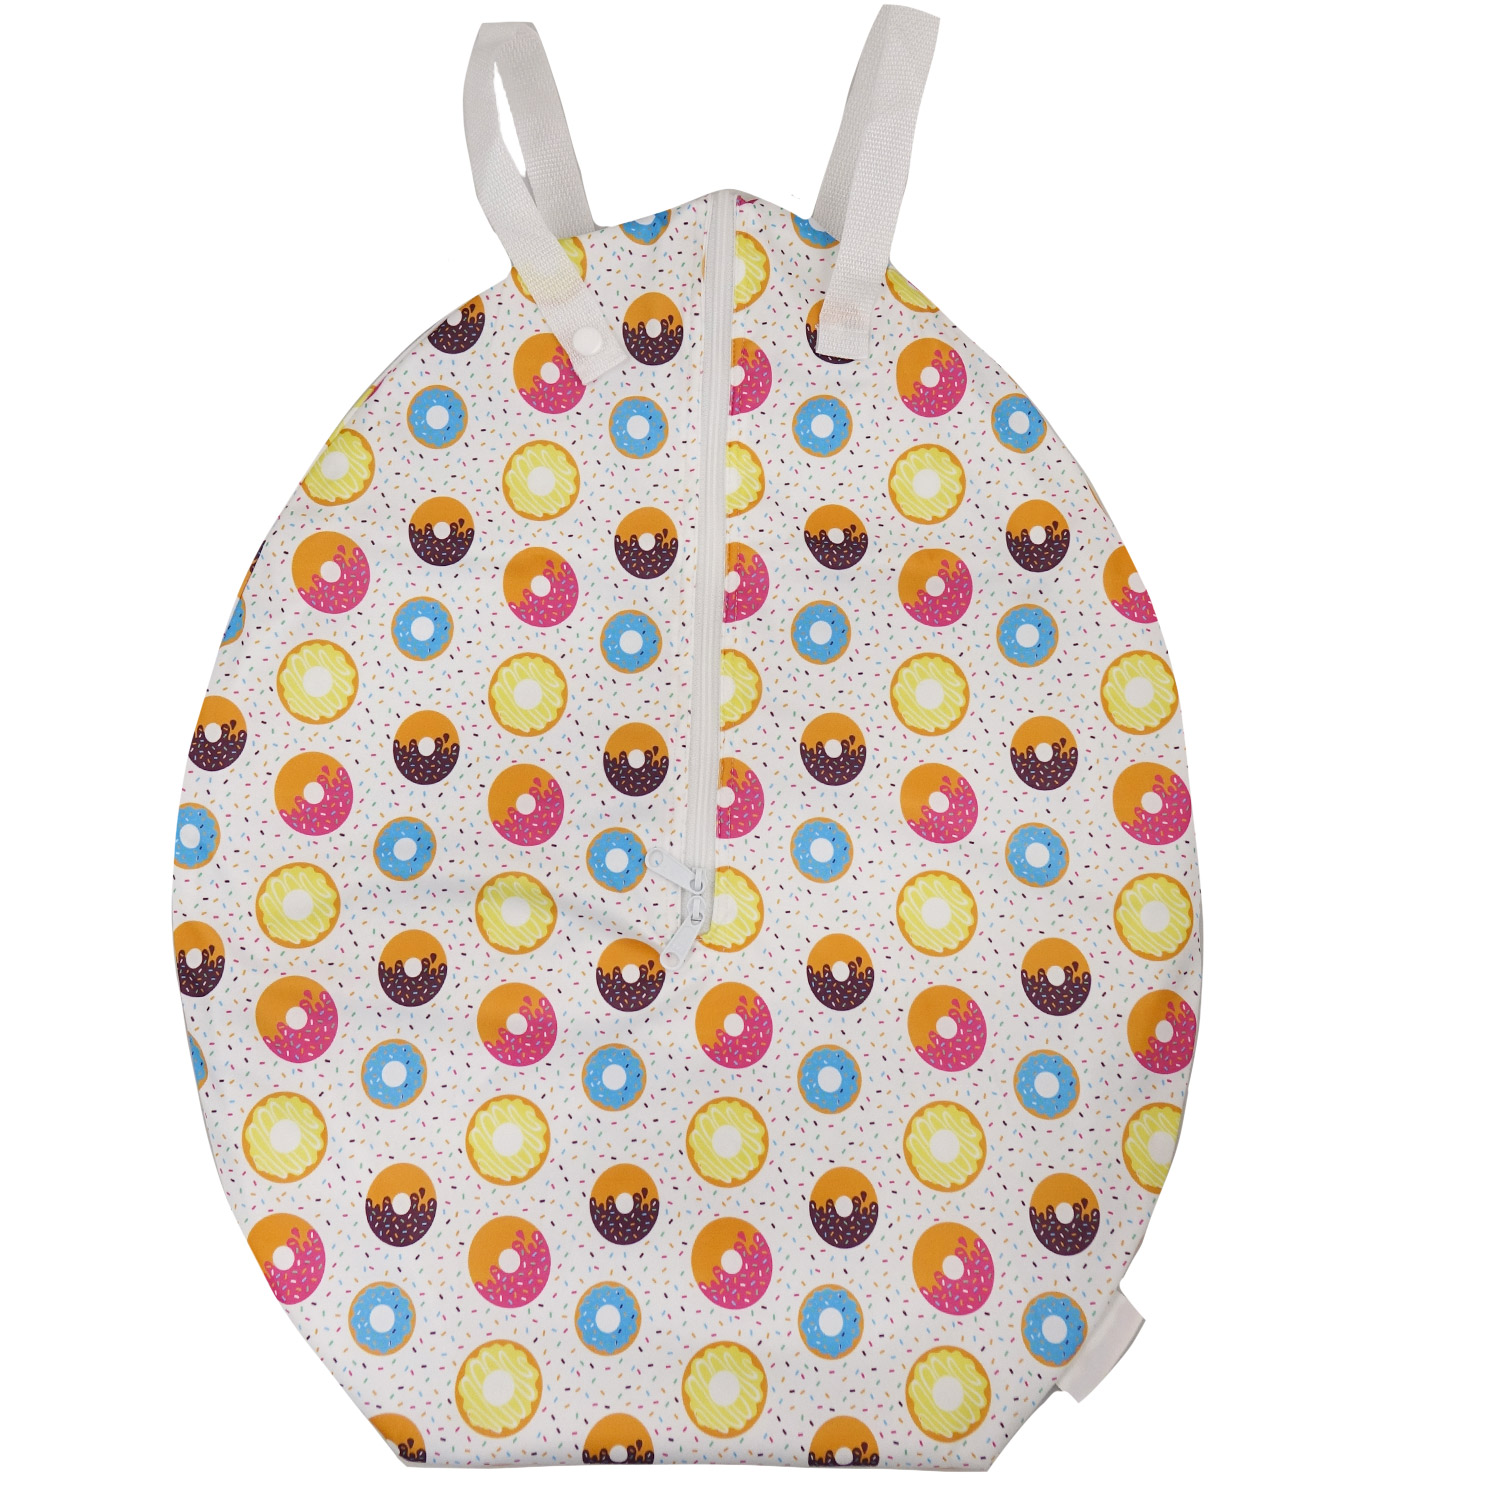 Smart Bottoms Hanging Wet Bag (L) Pattern: Sprinkles